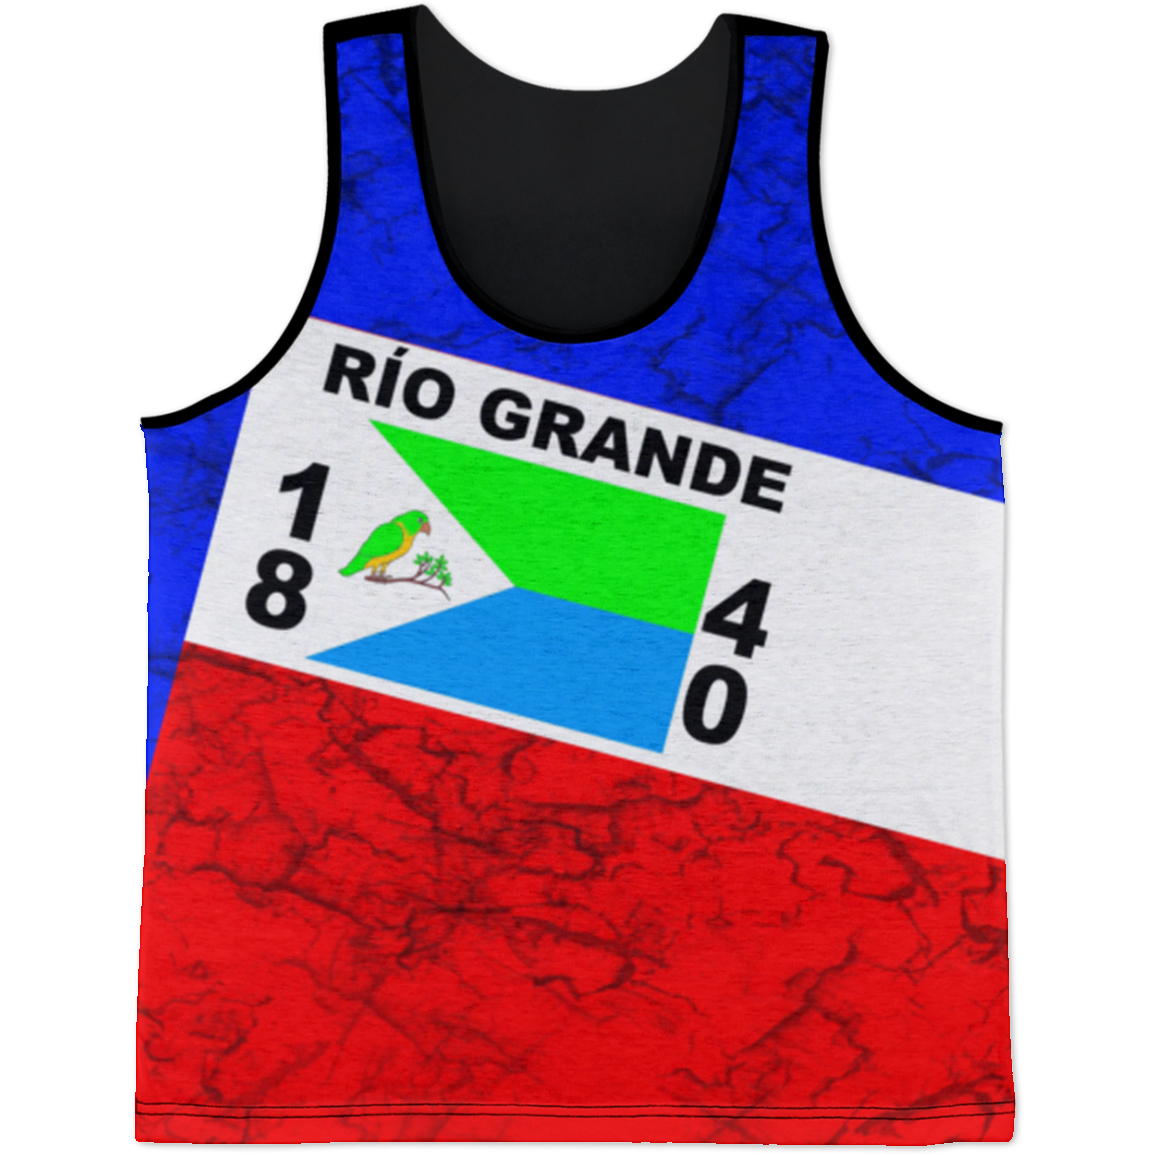 Rio Grande Tank Top - Puerto Rican Pride